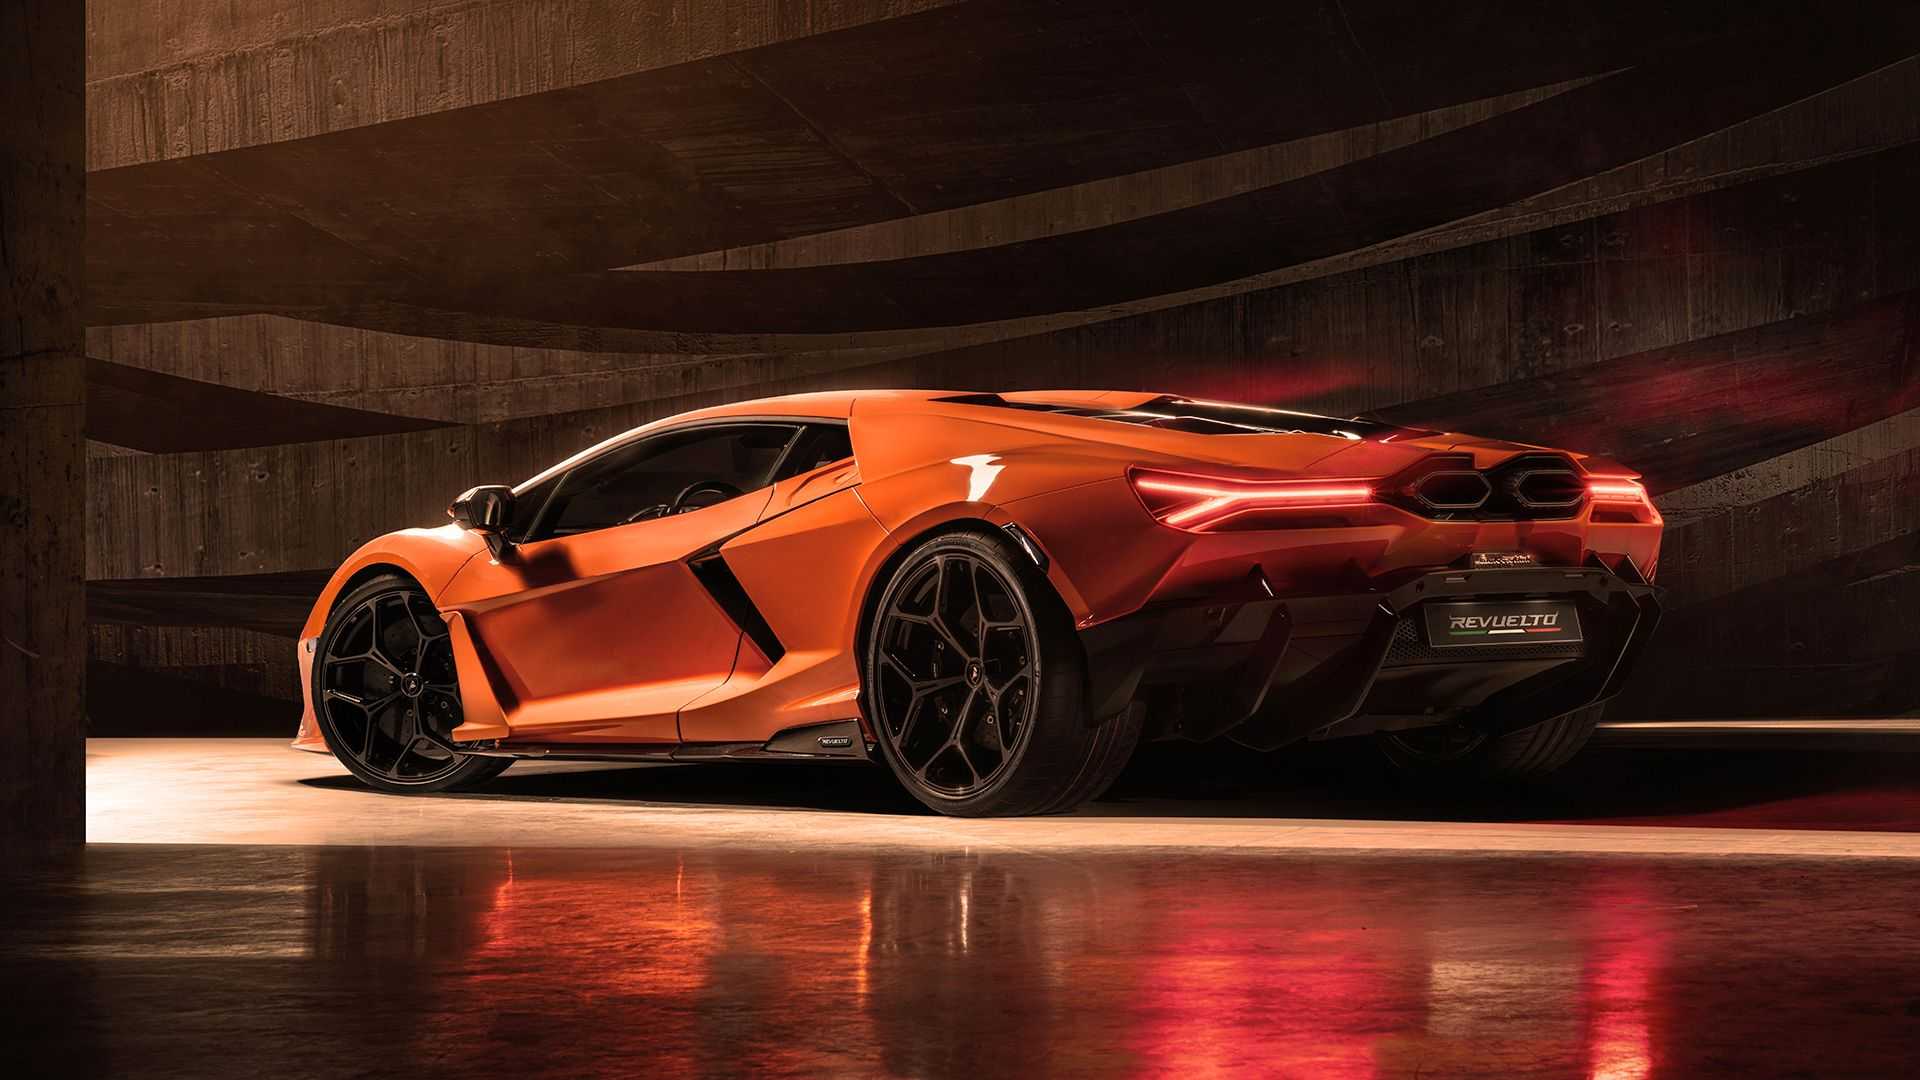 Ra mắt Lamborghini Revuelto thế chỗ Aventador: Siêu xe mạnh nhất lịch sử hãng nhưng đi phố chỉ ngang cơ Civic - ảnh 2